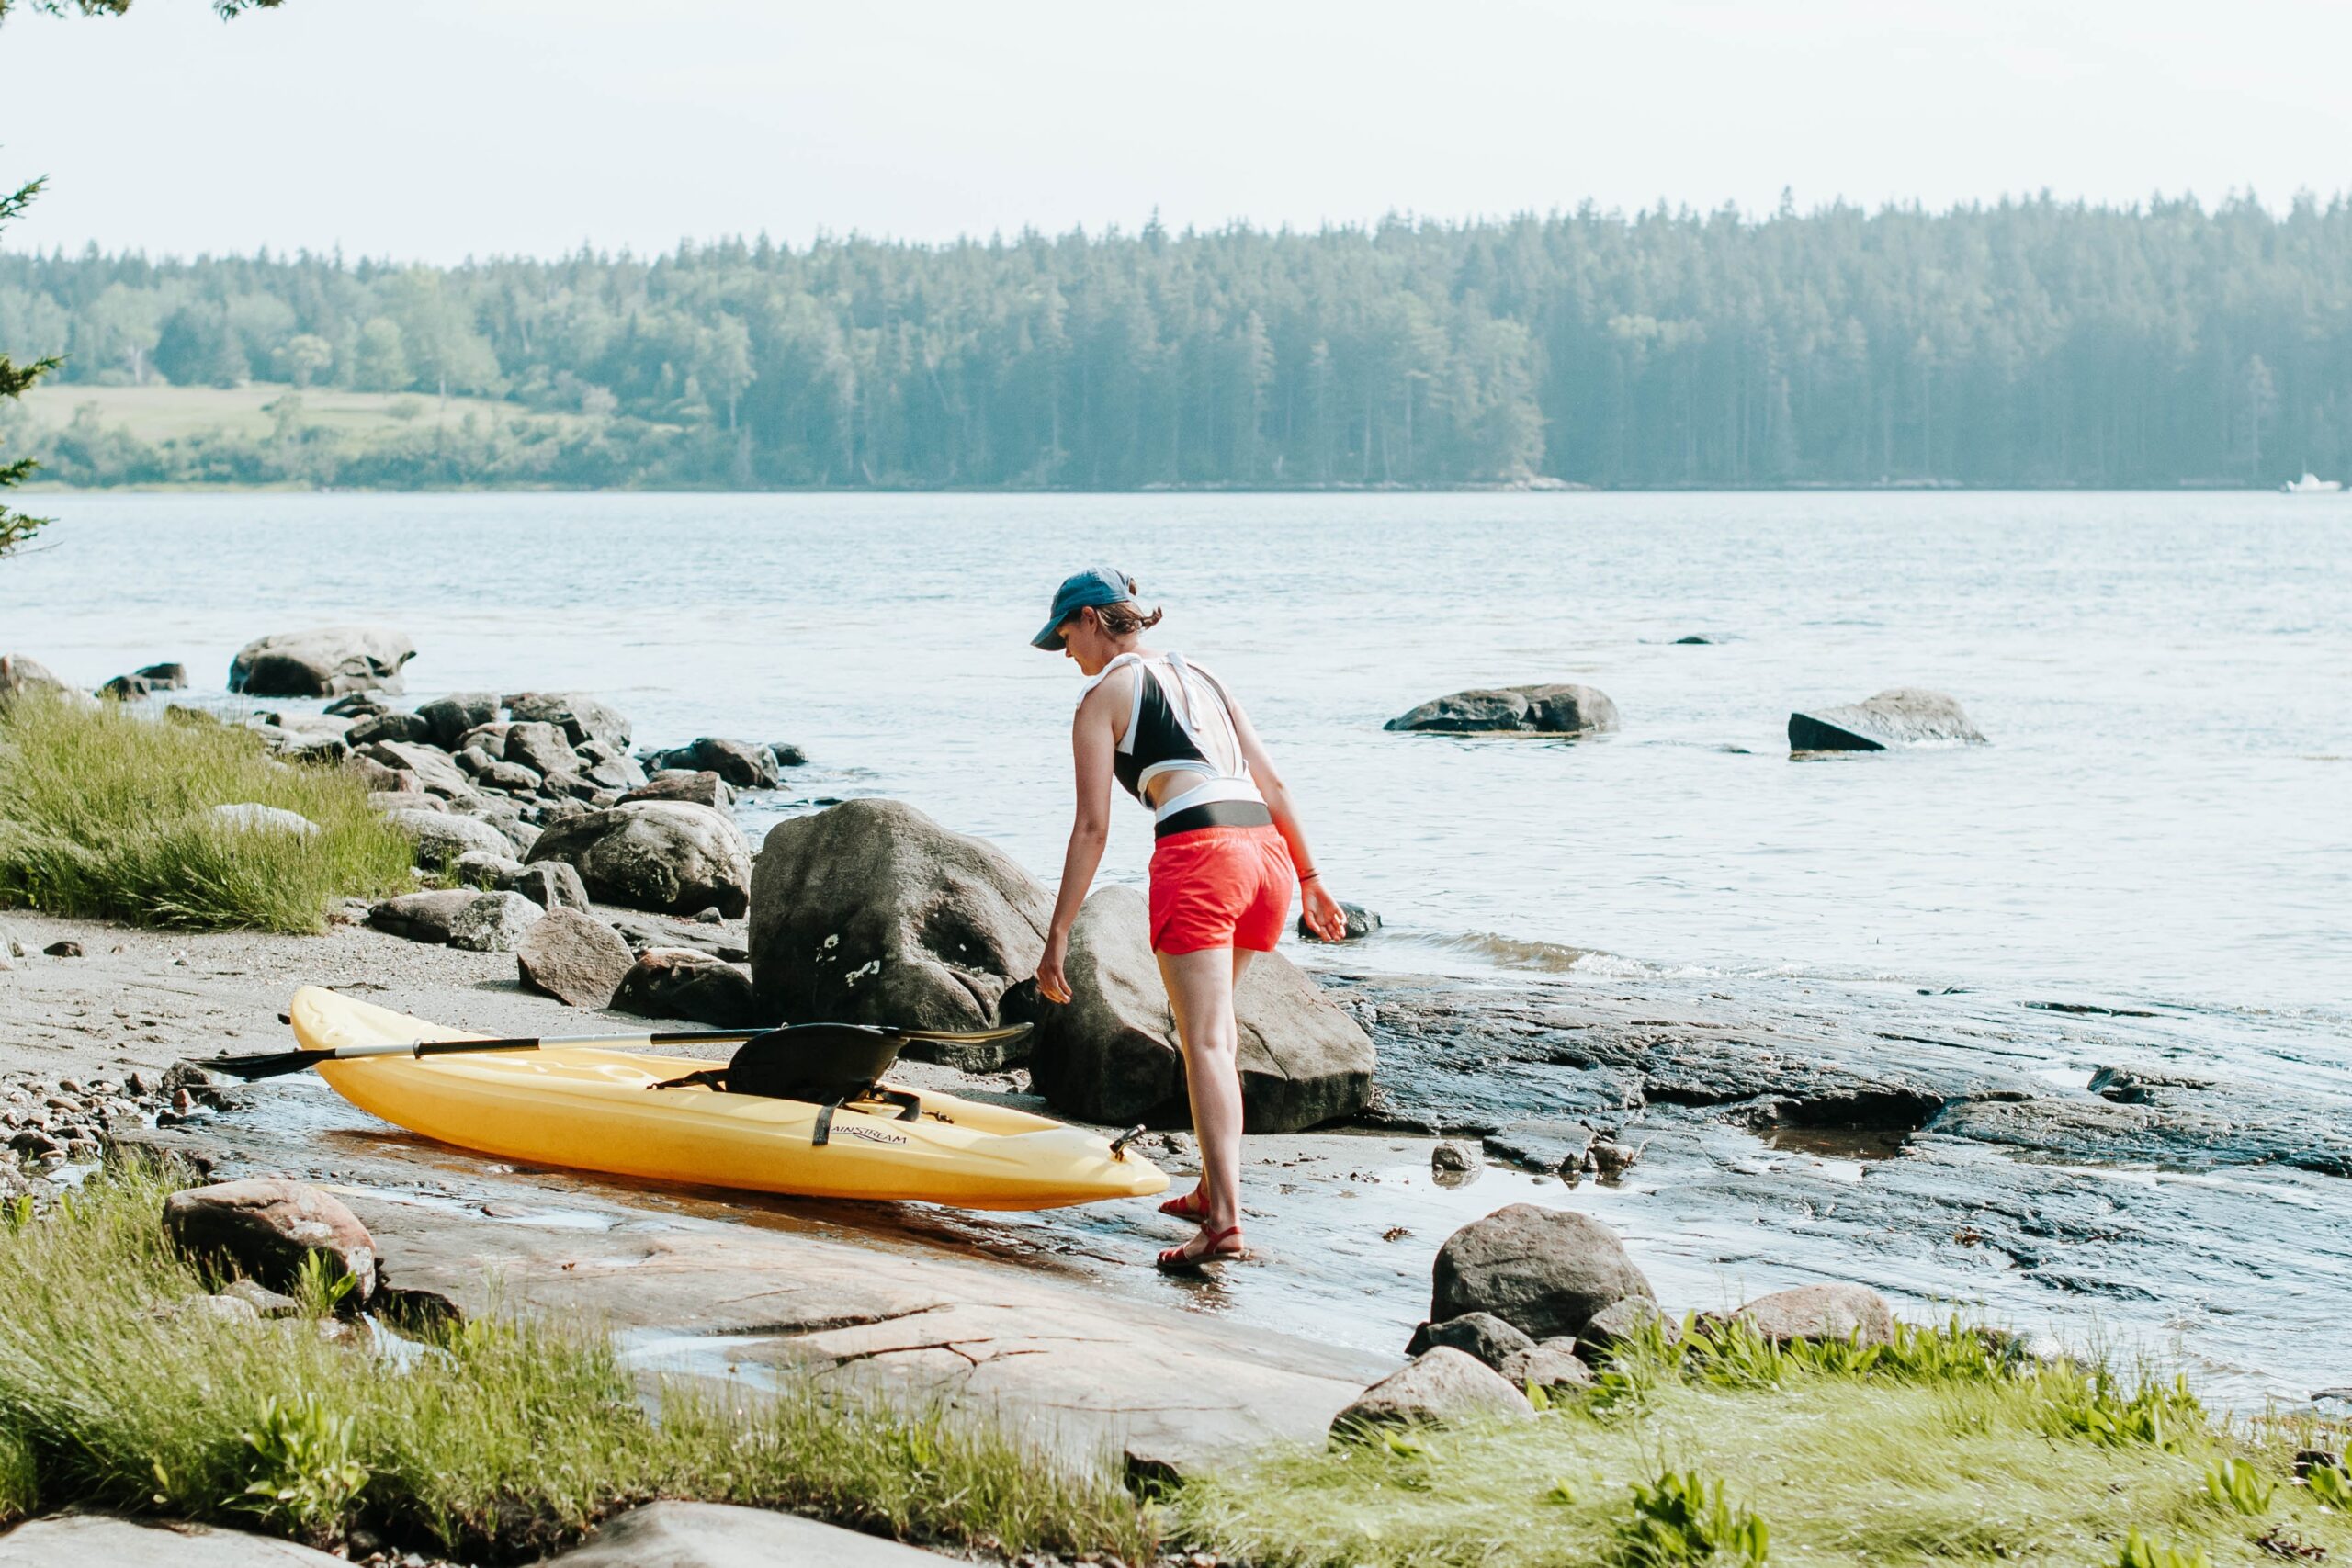 Kayaking the Maine coast. Photo by Aubrey Odom.